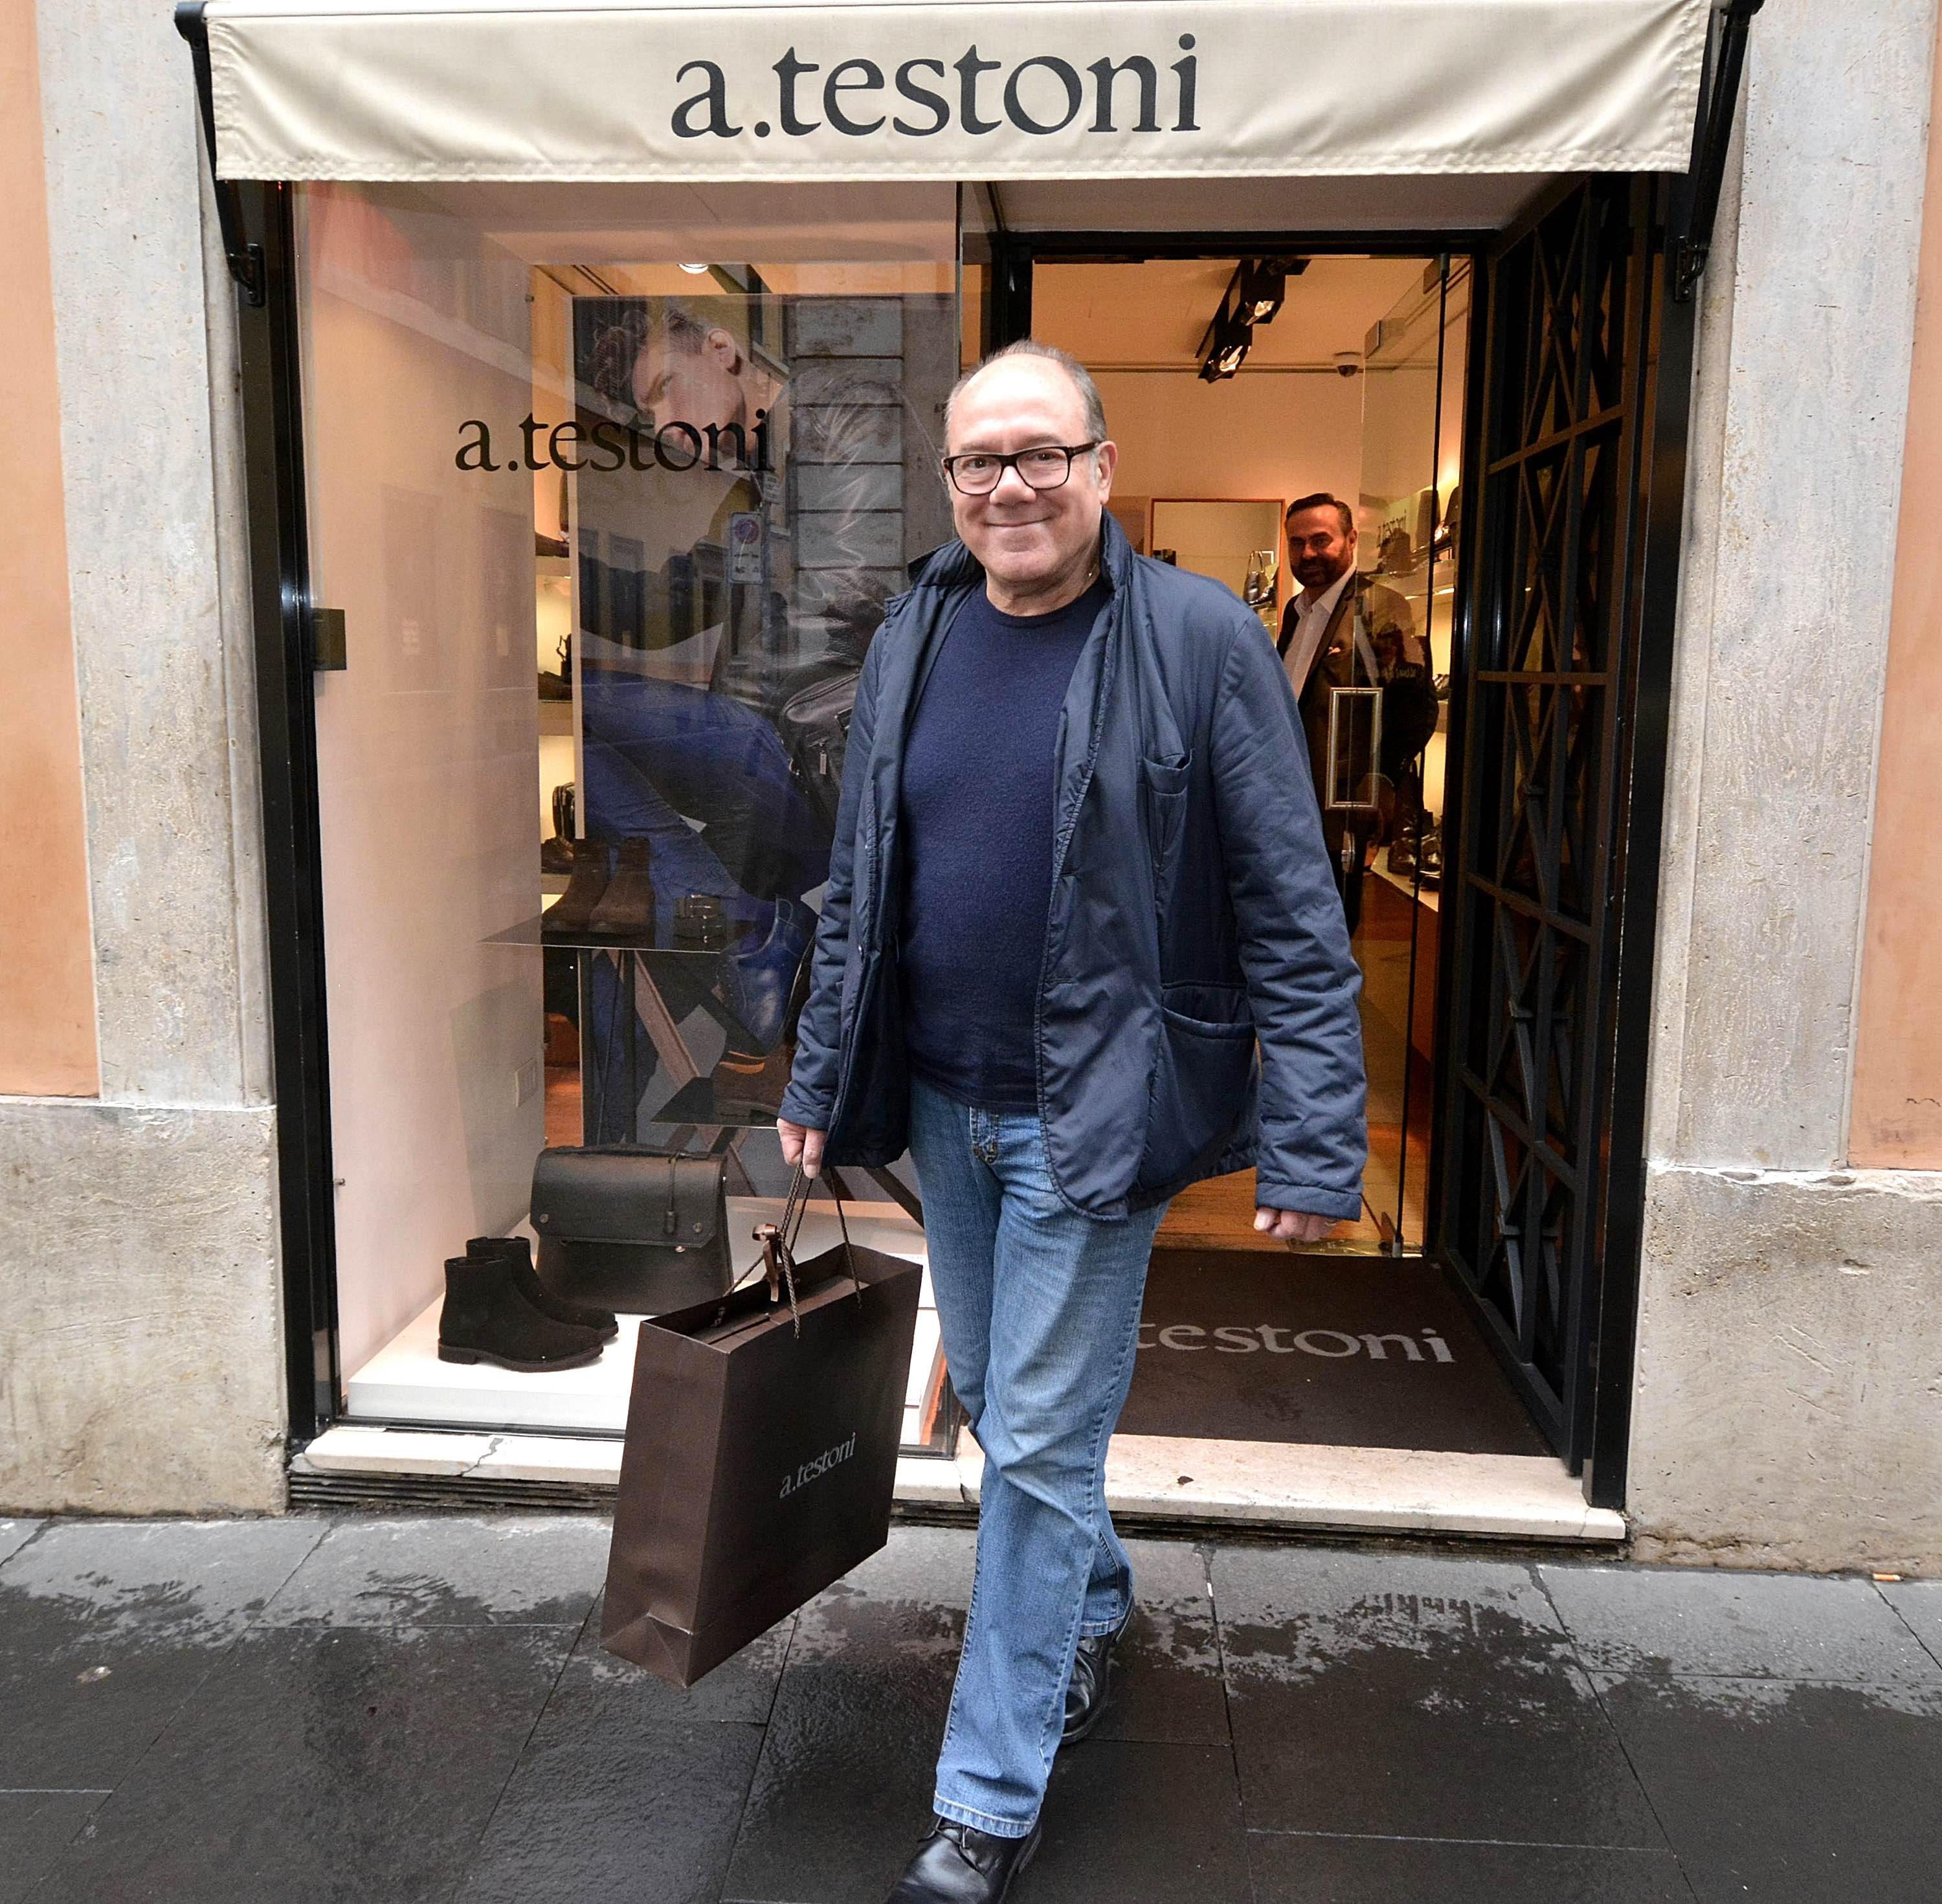 Celebrity Style 2015: Carlo Verdone fa shopping nella boutique a.testoni di Roma